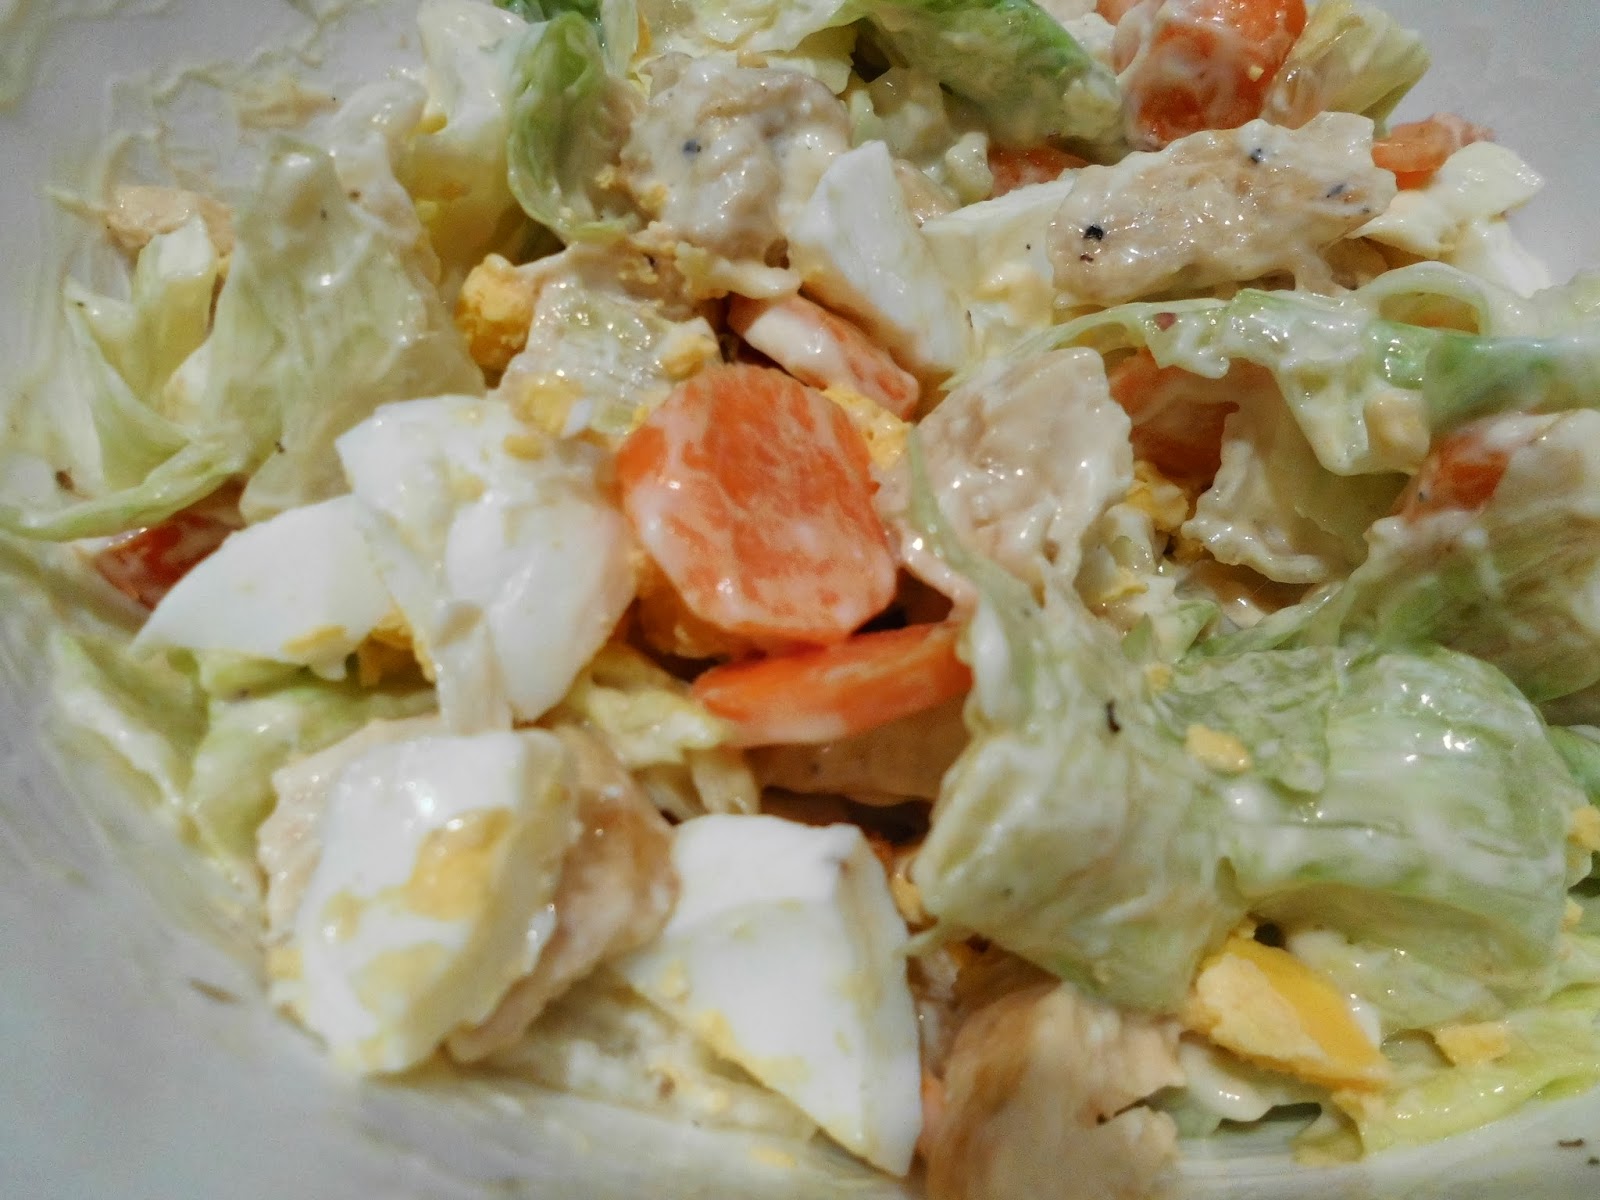 Cocina De Cris: Ensalada de pollo y huevo duro